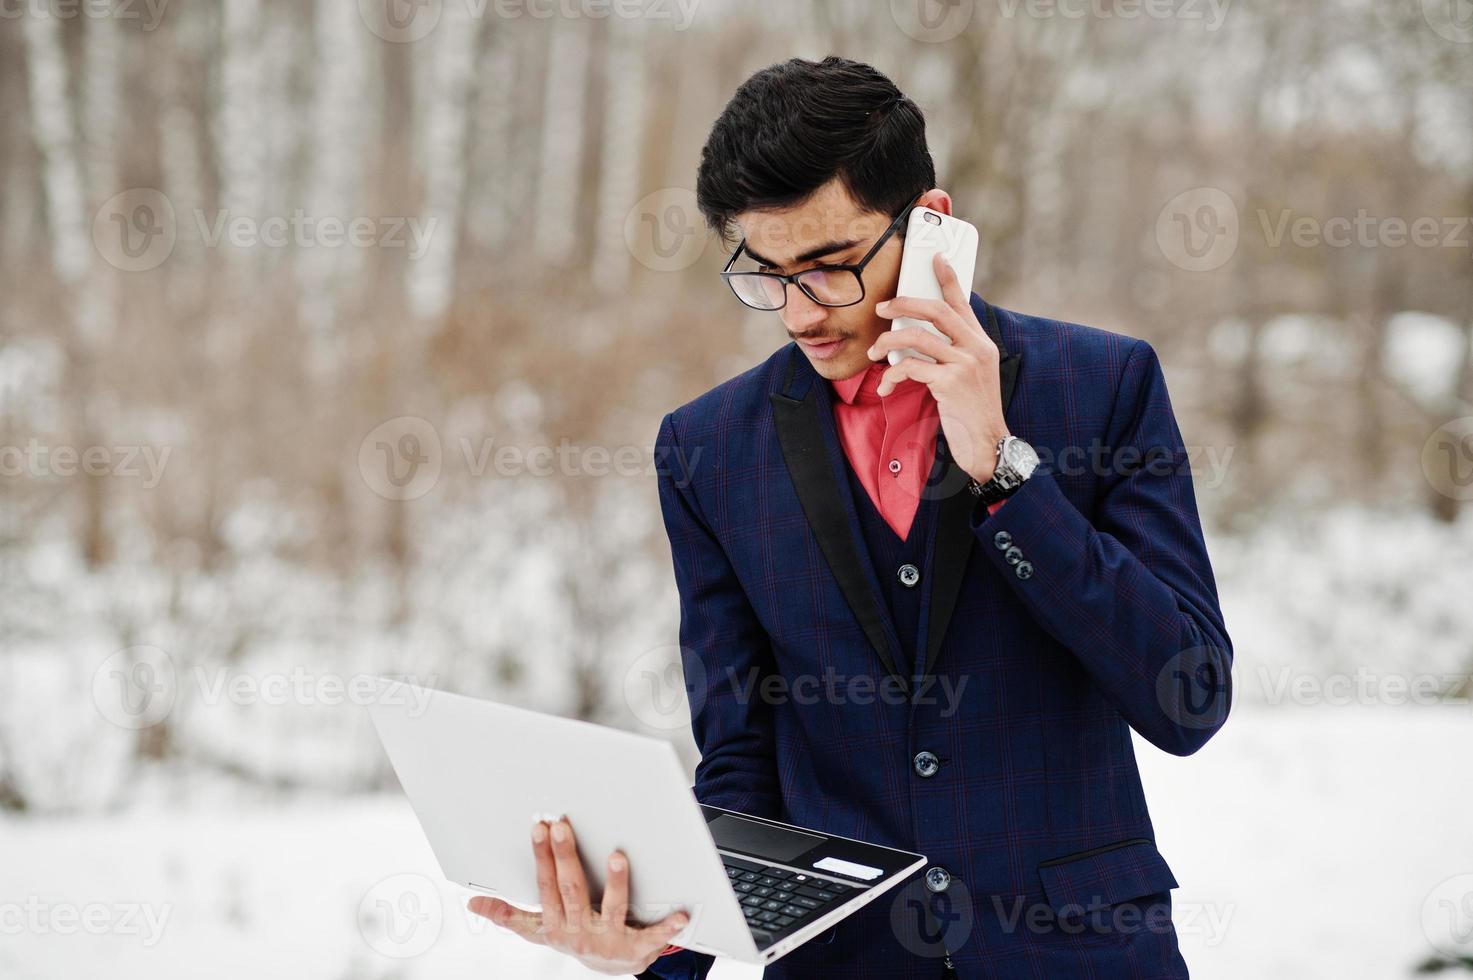 homme étudiant indien élégant en costume et lunettes posé à la journée d'hiver en plein air avec un ordinateur portable à la main, parlant au téléphone. photo